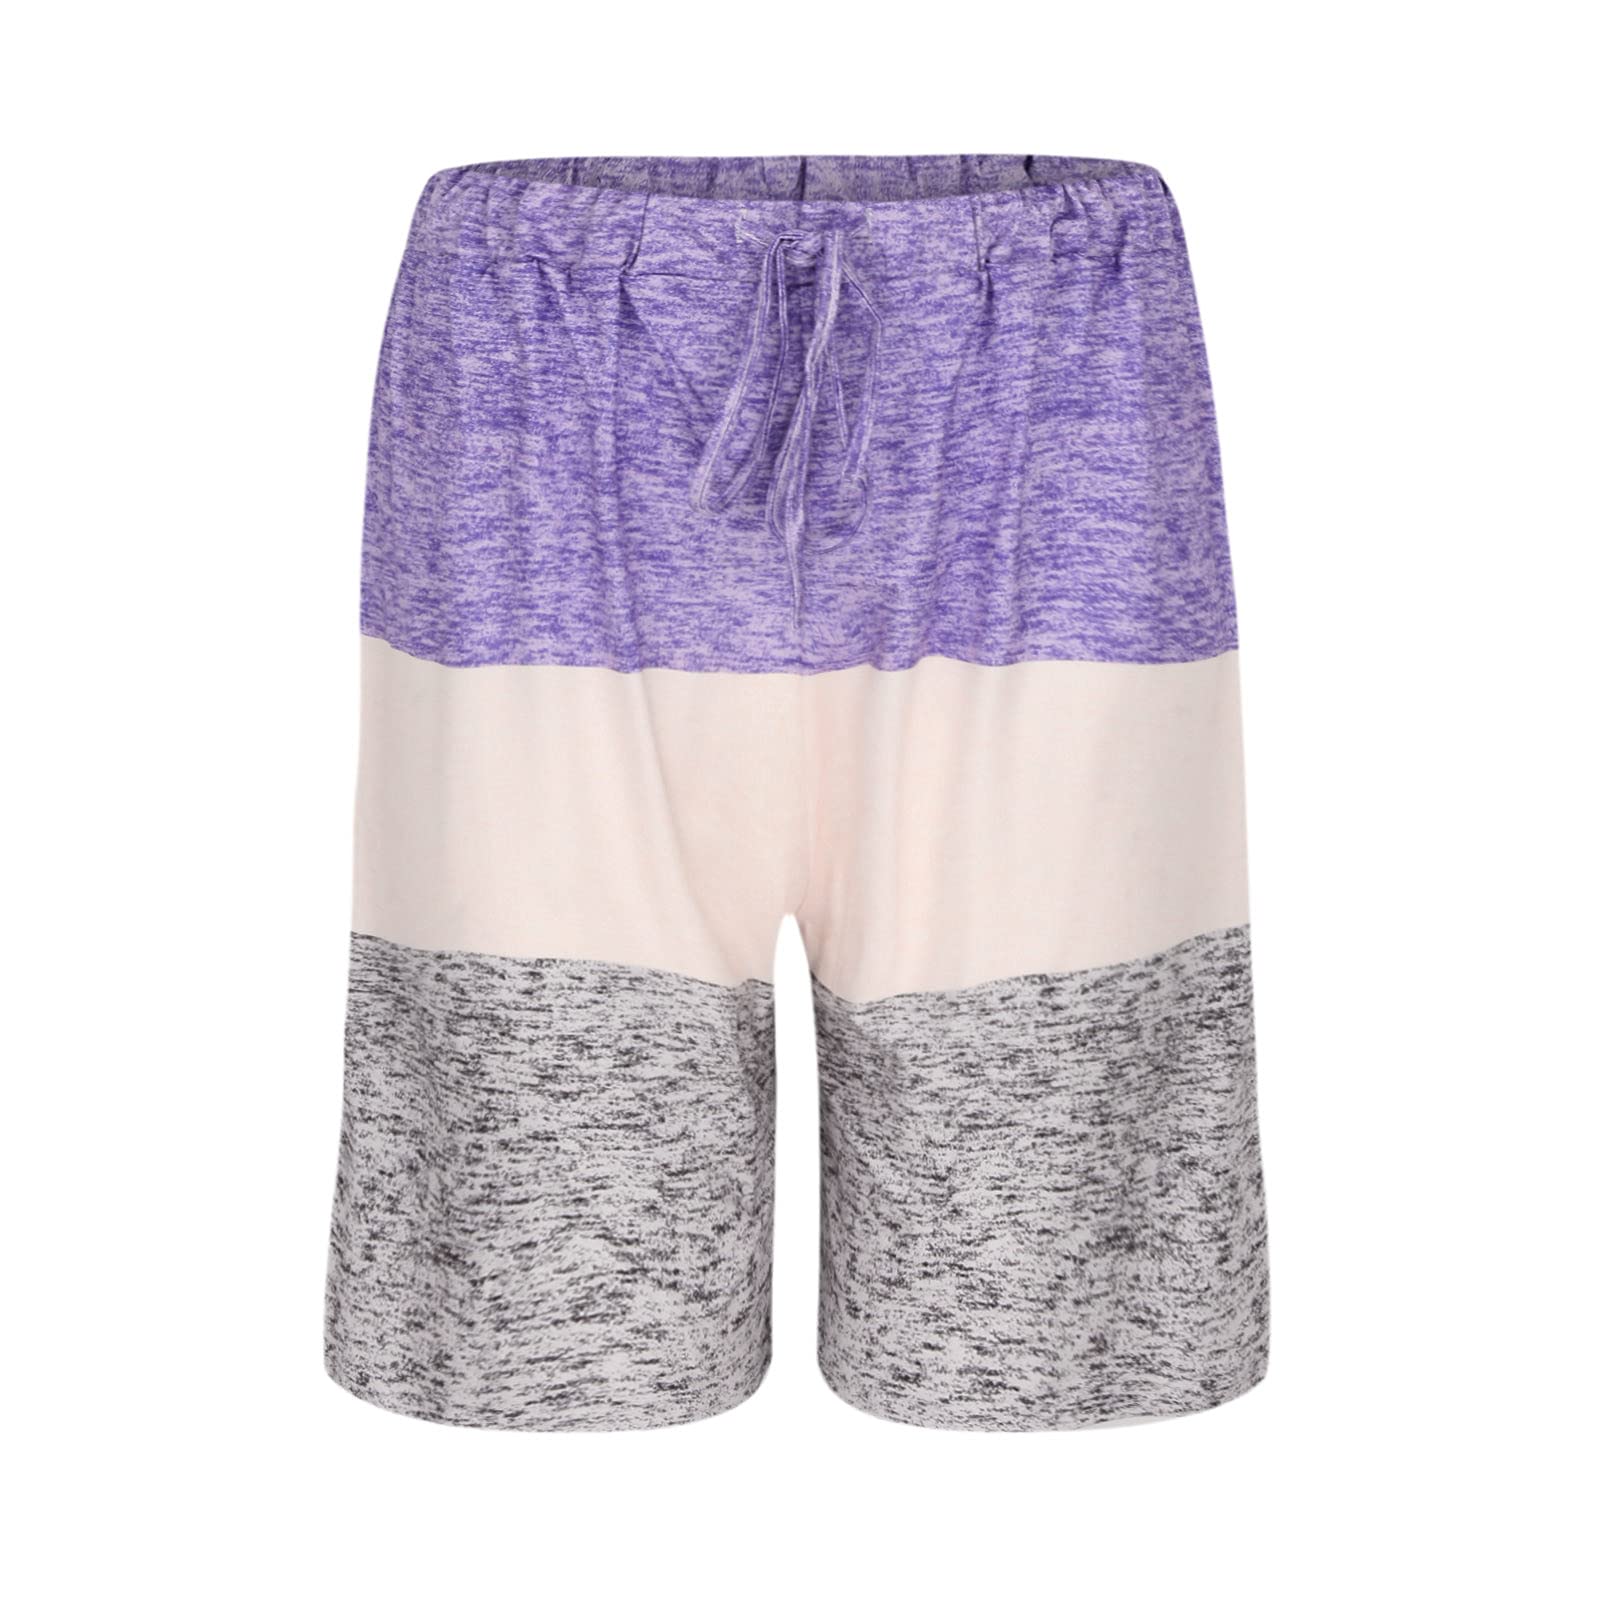 Bravetoshop Womens Athletic Shorts Workout Running Yoga Shorts Elastic Waist Summer Lounge Shorts (Purple,XXL)